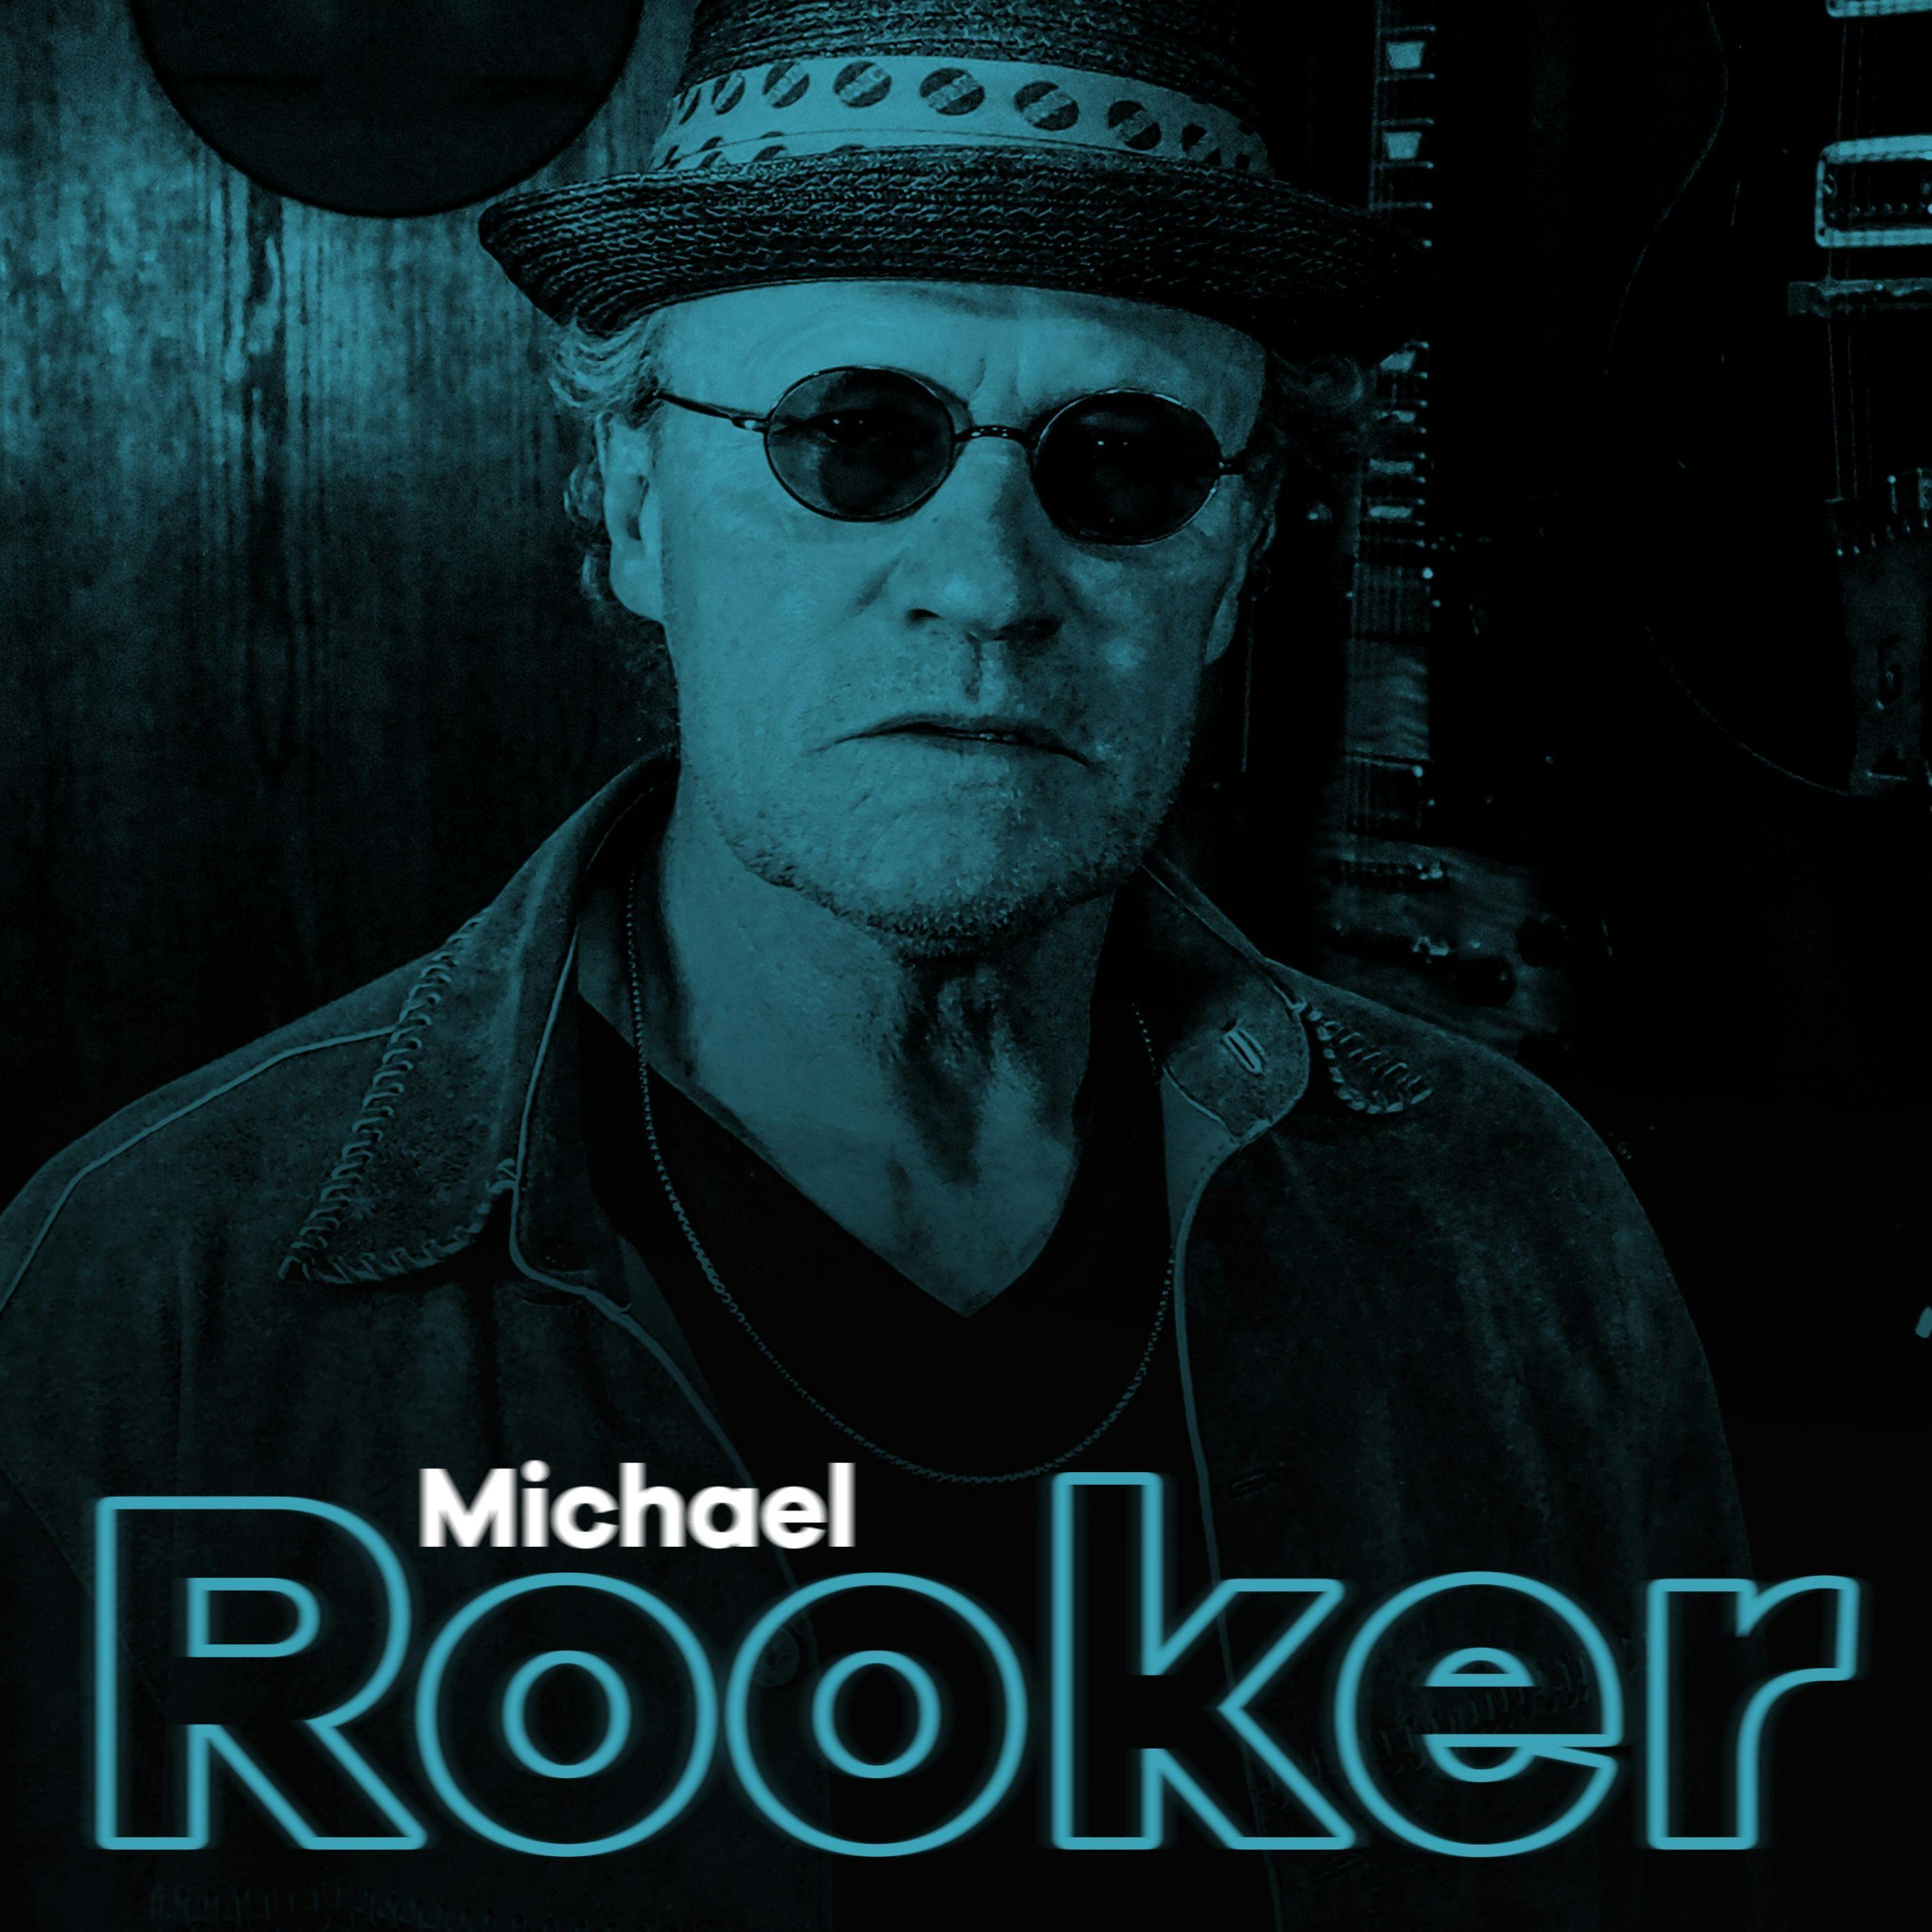 Michael Rooker Returns